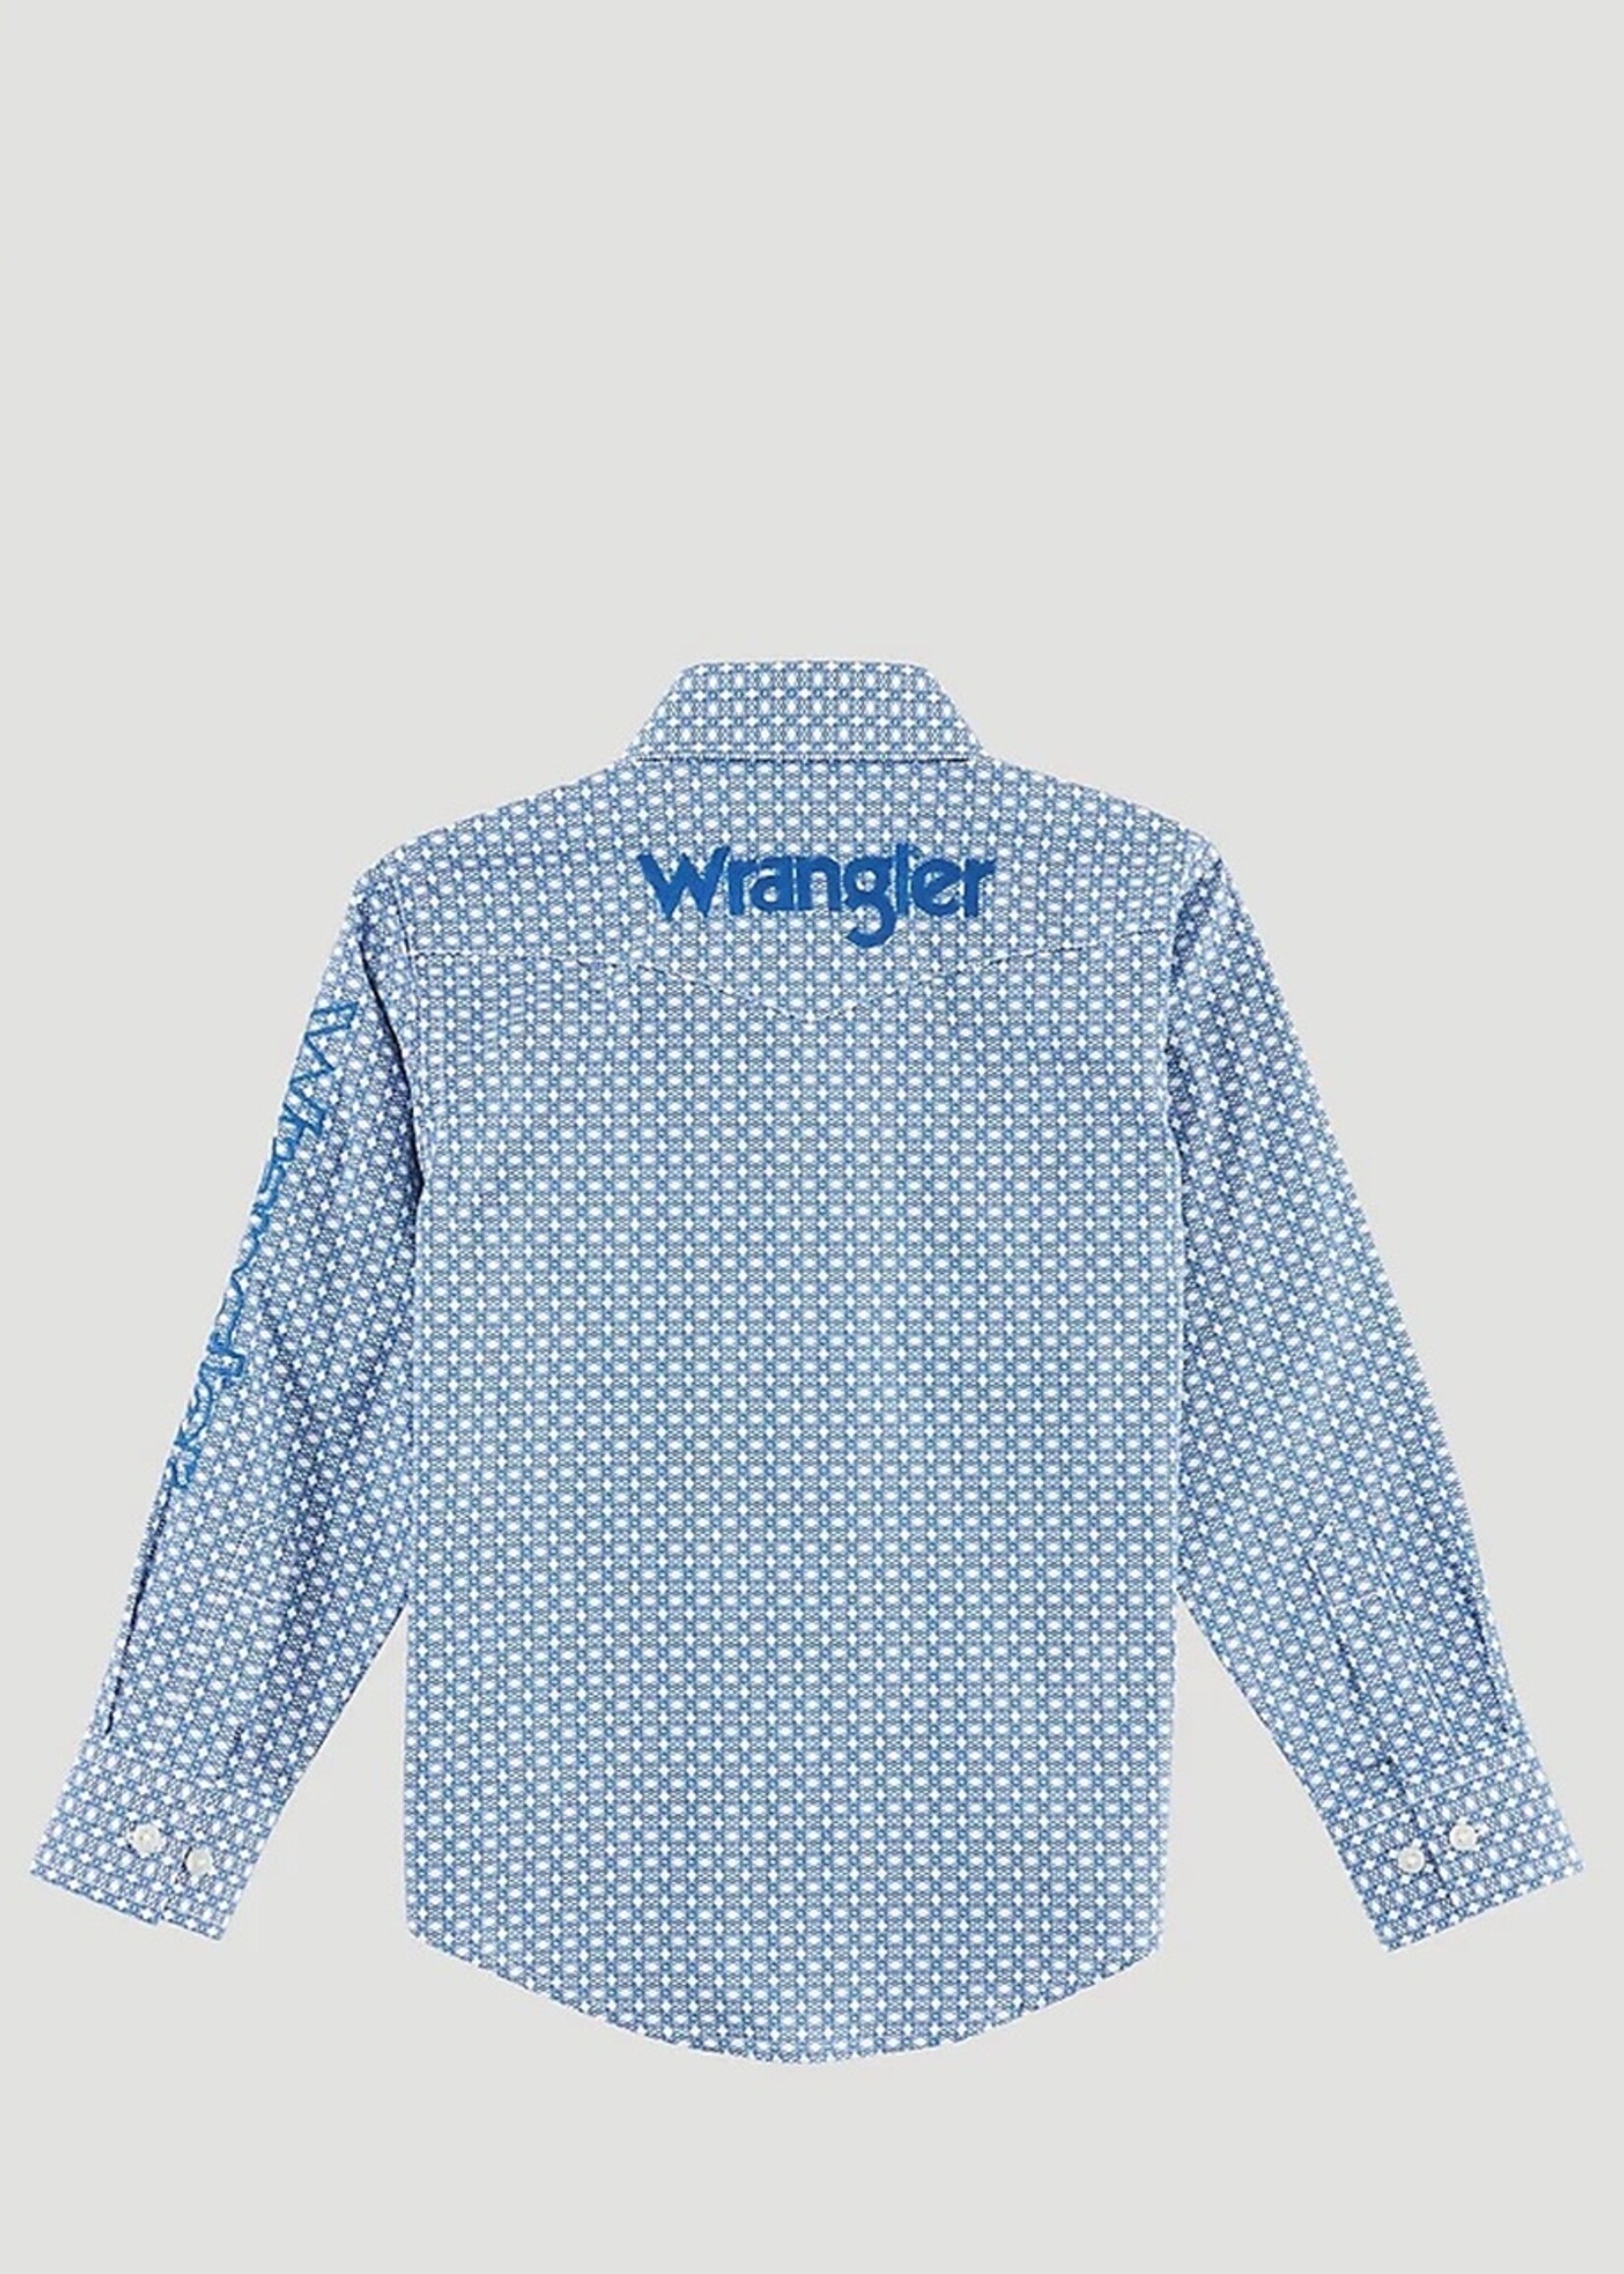 Wrangler Wrangler - Boys Logo Long Sleeve Shirt - 112314857